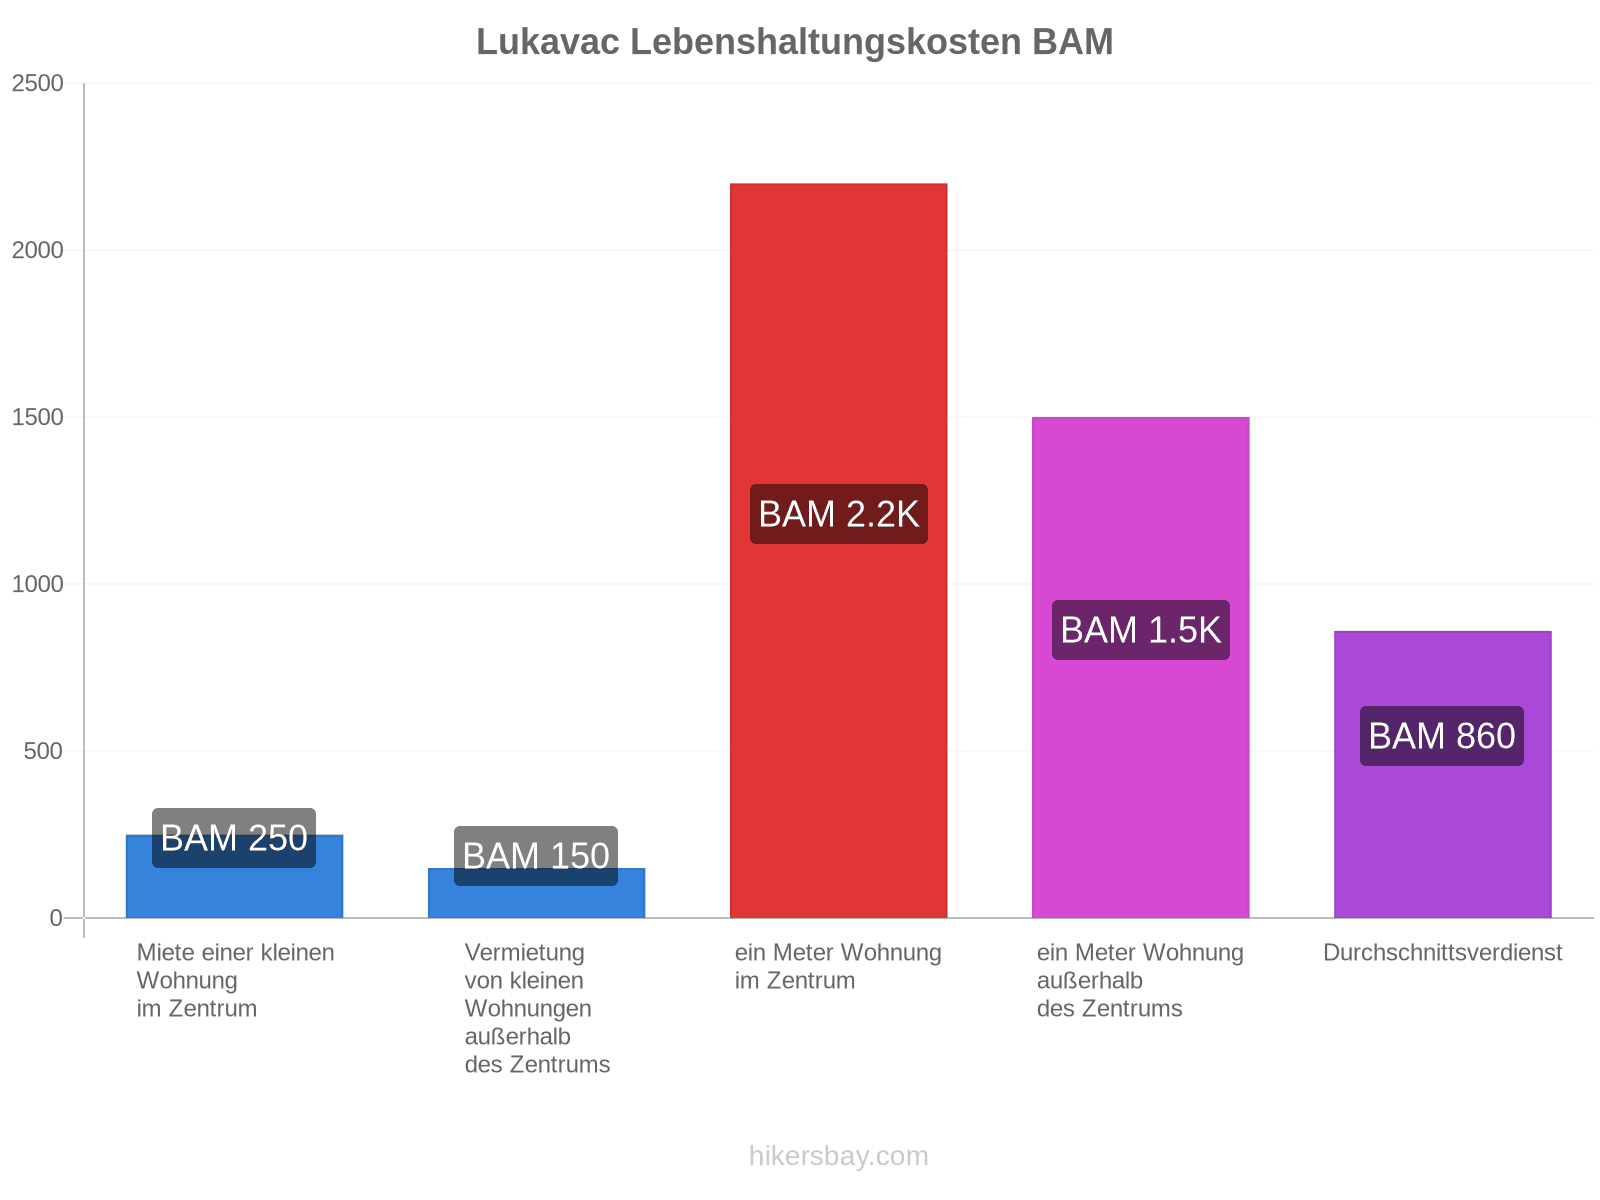 Lukavac Lebenshaltungskosten hikersbay.com